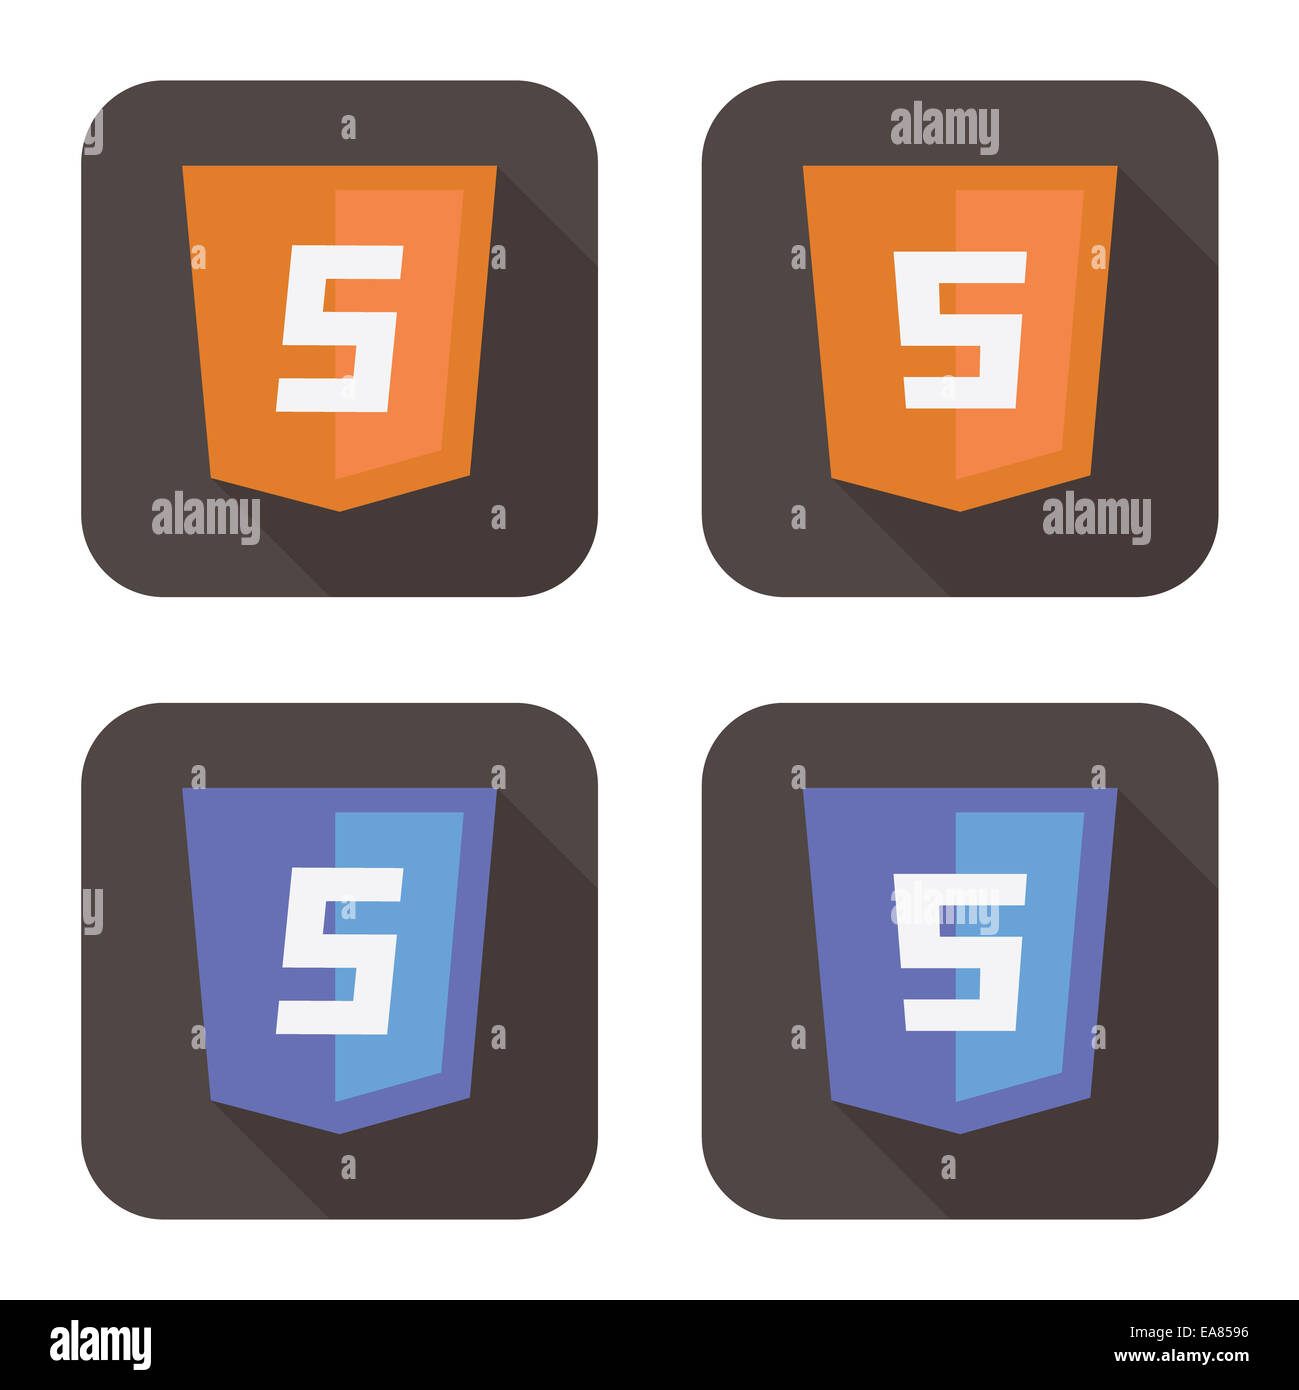 Vektor-Illustration von orangenen und blauen HTML-Schild Stockfoto